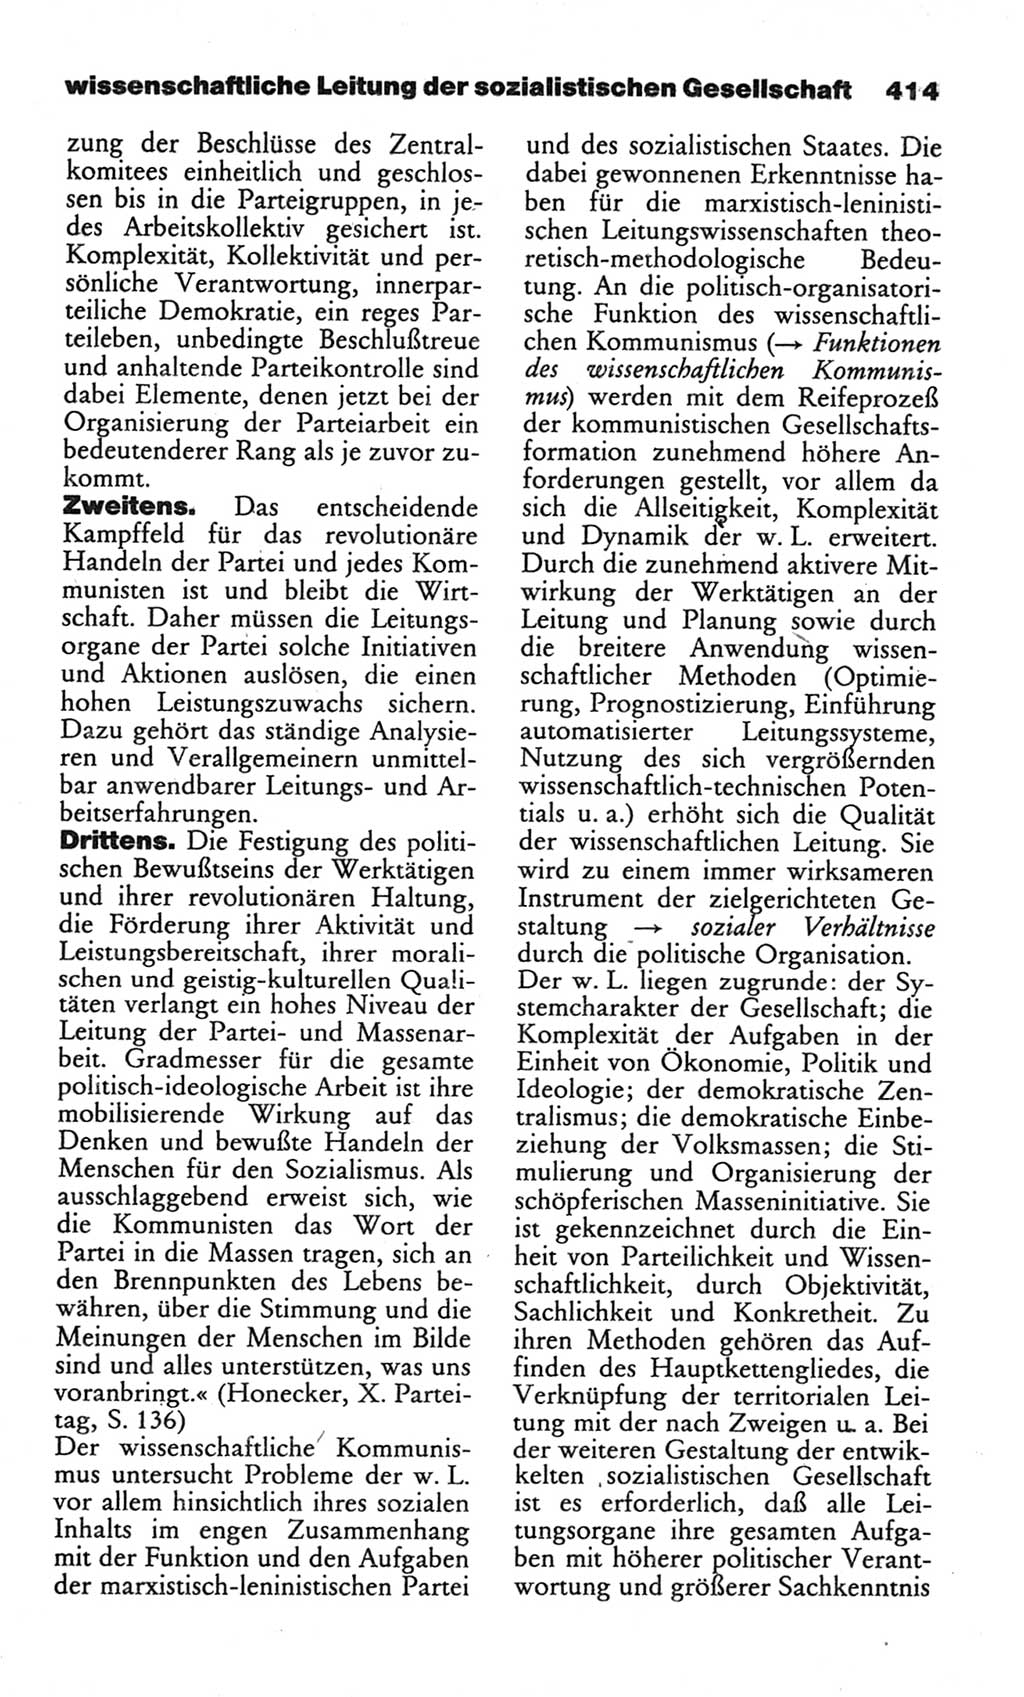 Wörterbuch des wissenschaftlichen Kommunismus [Deutsche Demokratische Republik (DDR)] 1982, Seite 414 (Wb. wiss. Komm. DDR 1982, S. 414)